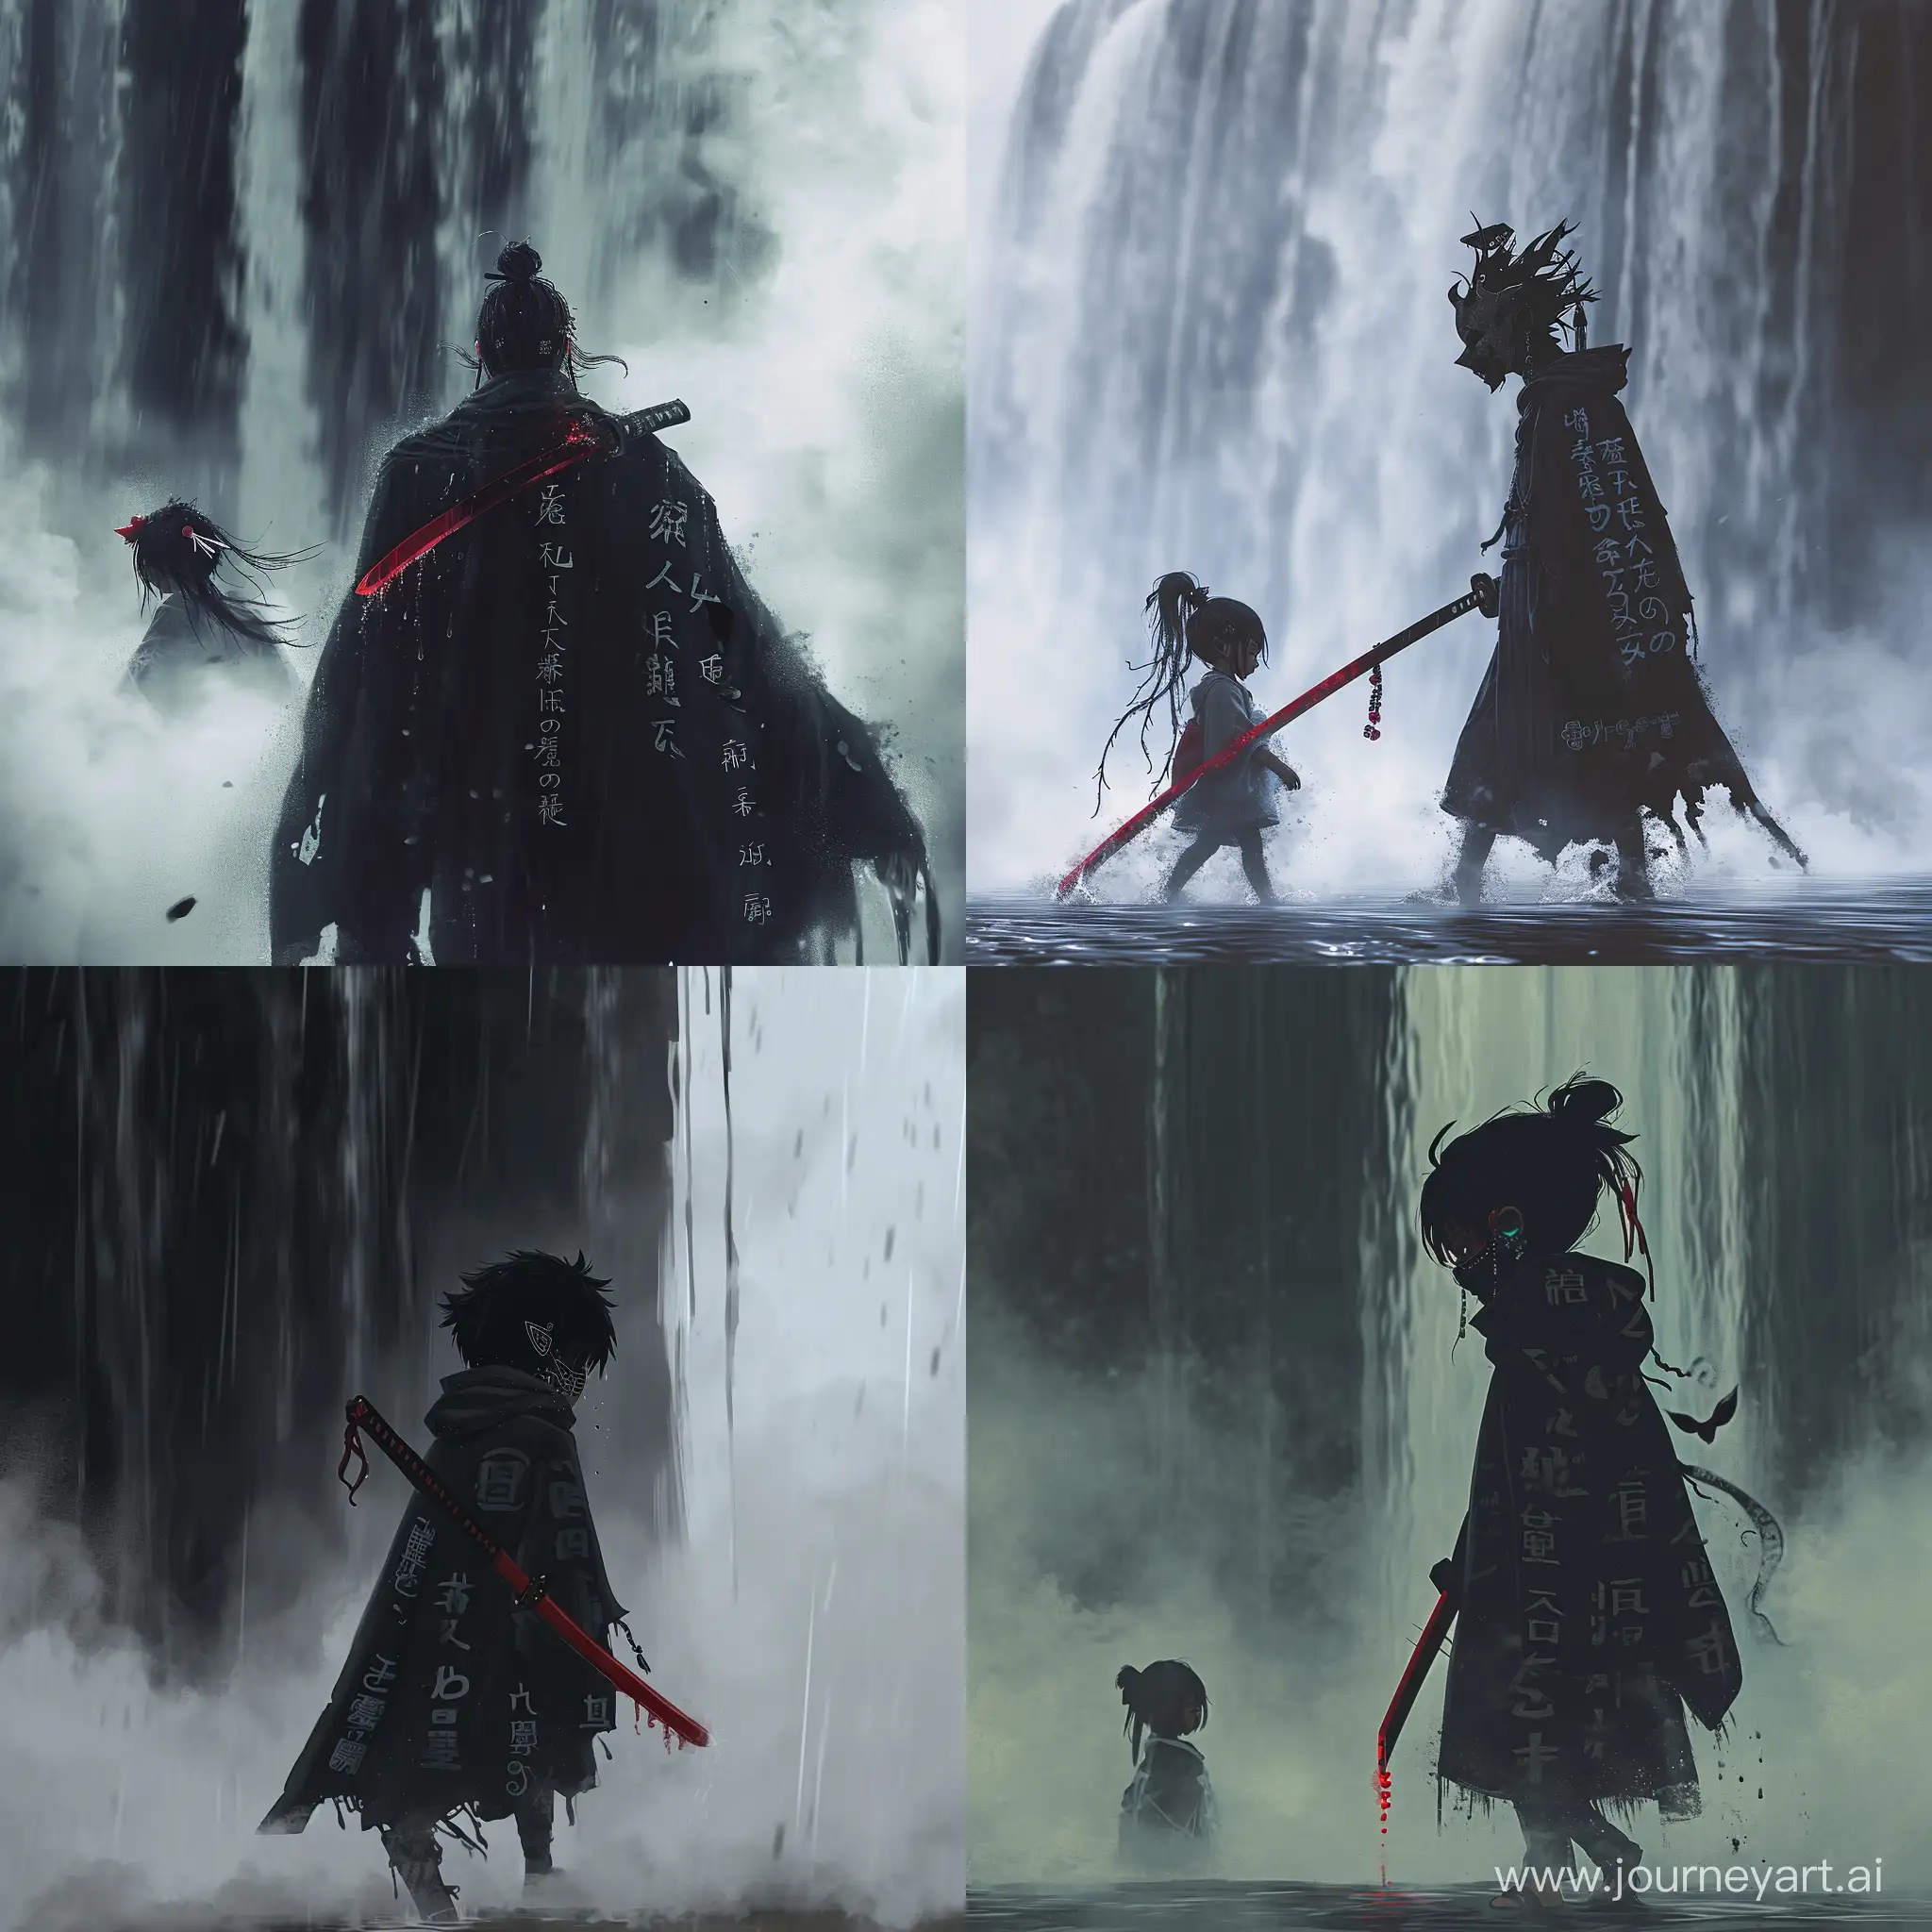 Маленький демон, ходящий тумана, под завесой тумана, держа в руках темно красный меч, чёрный плащ с японскими надписями, японские серьги на ушах, с закрытым маской лицом, сзади чёрный водопад, он вонзает в меч в девочку. Style anime, аниме